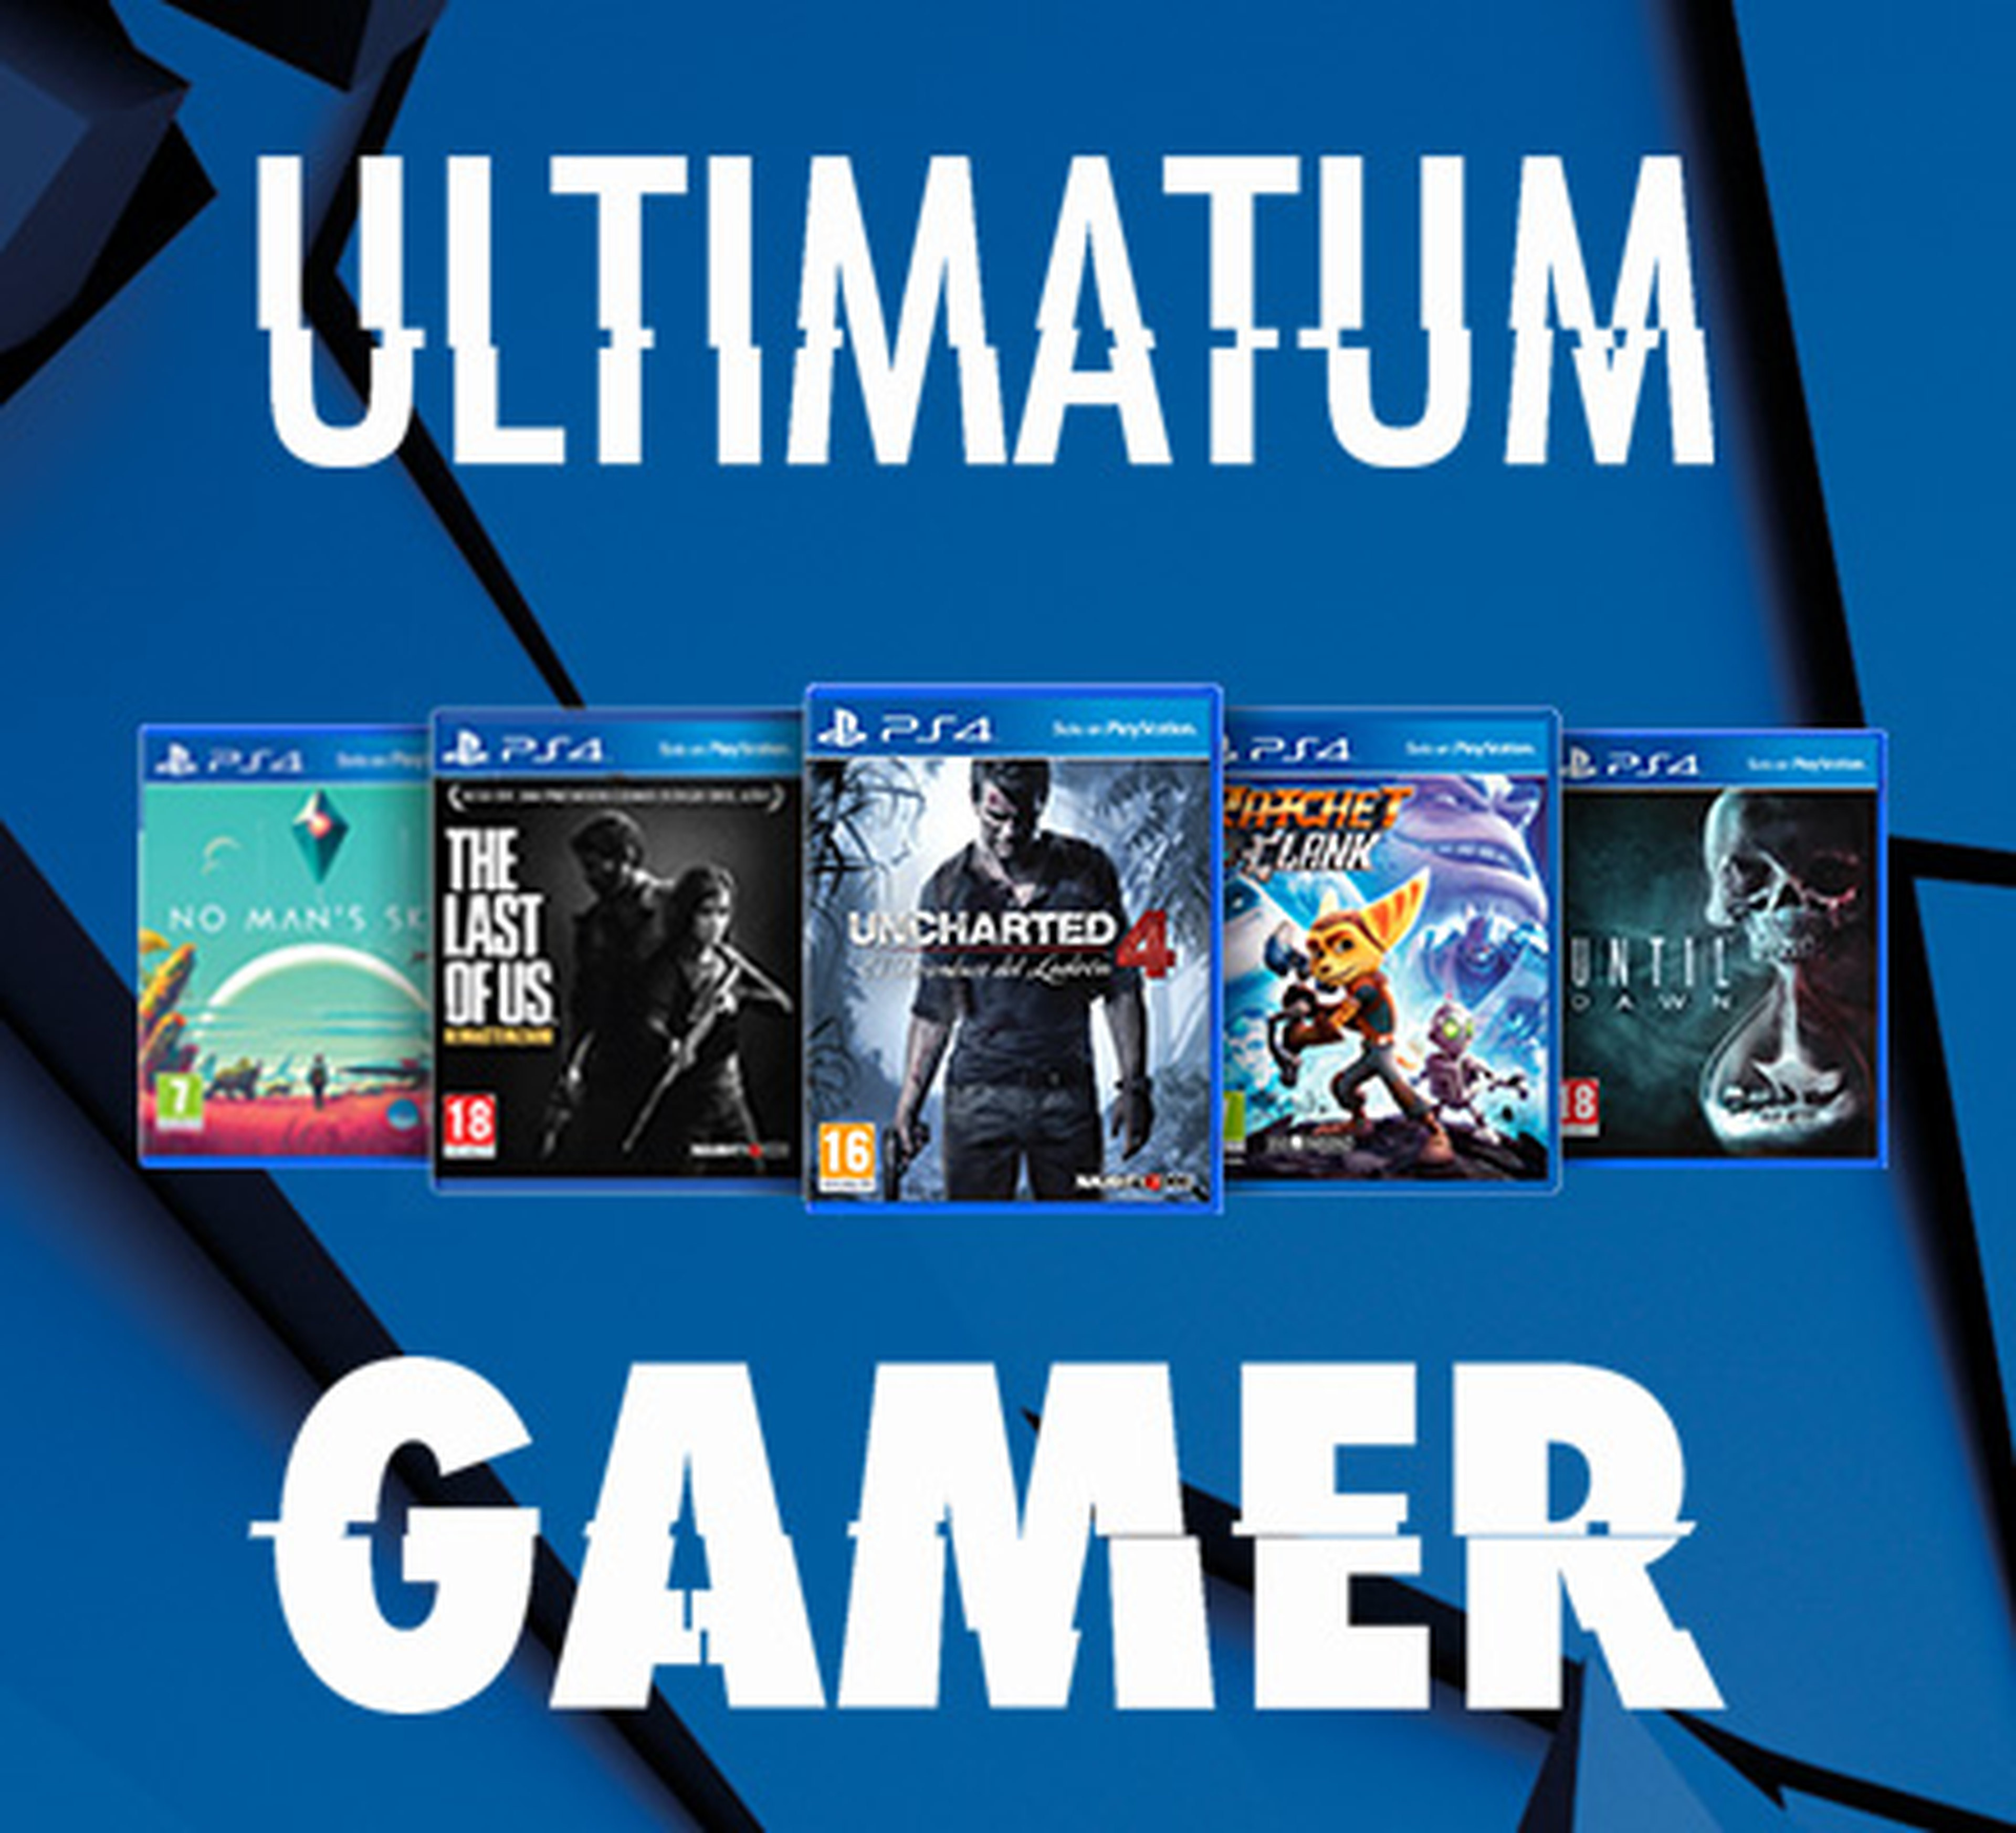 PlayStation Ultimatum Gamer